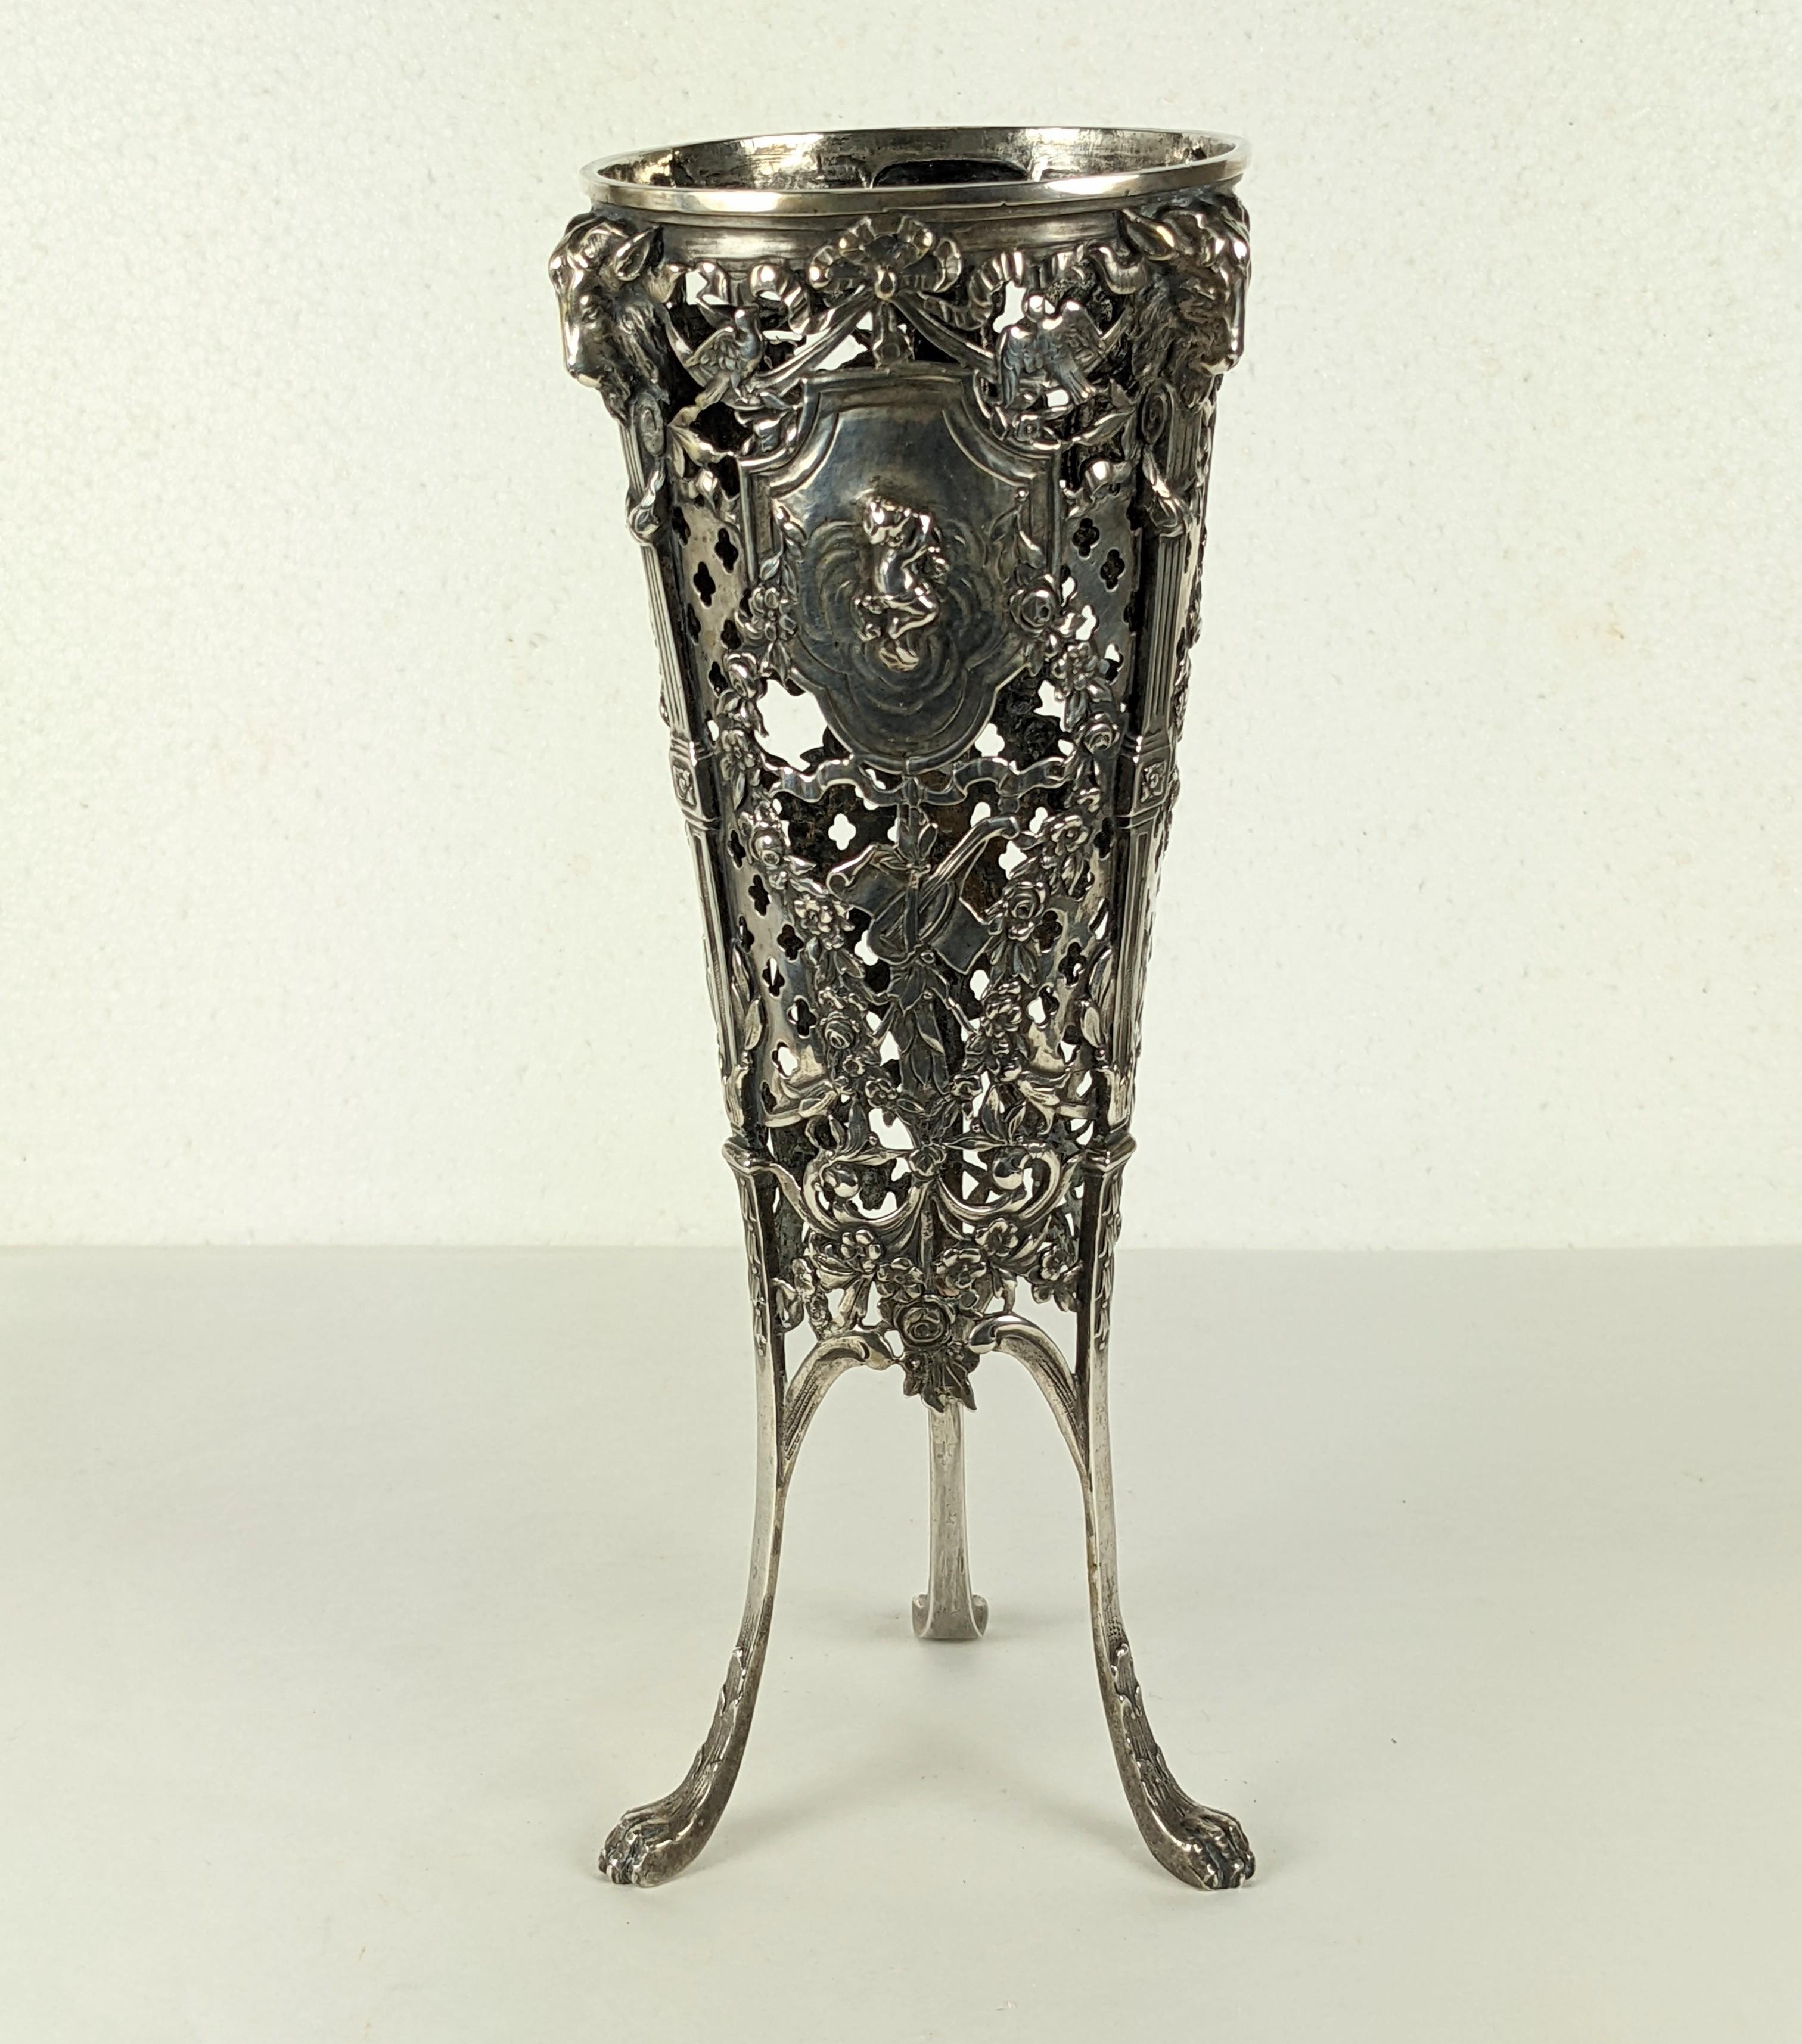 Base de vase en argent 800 de la fin du 19e siècle, de fort calibre, avec motifs de repousse et de travail ouvert. Les motifs comprennent des putti, des têtes de béliers, des oiseaux et des guirlandes. La doublure en verre serait effilée et est